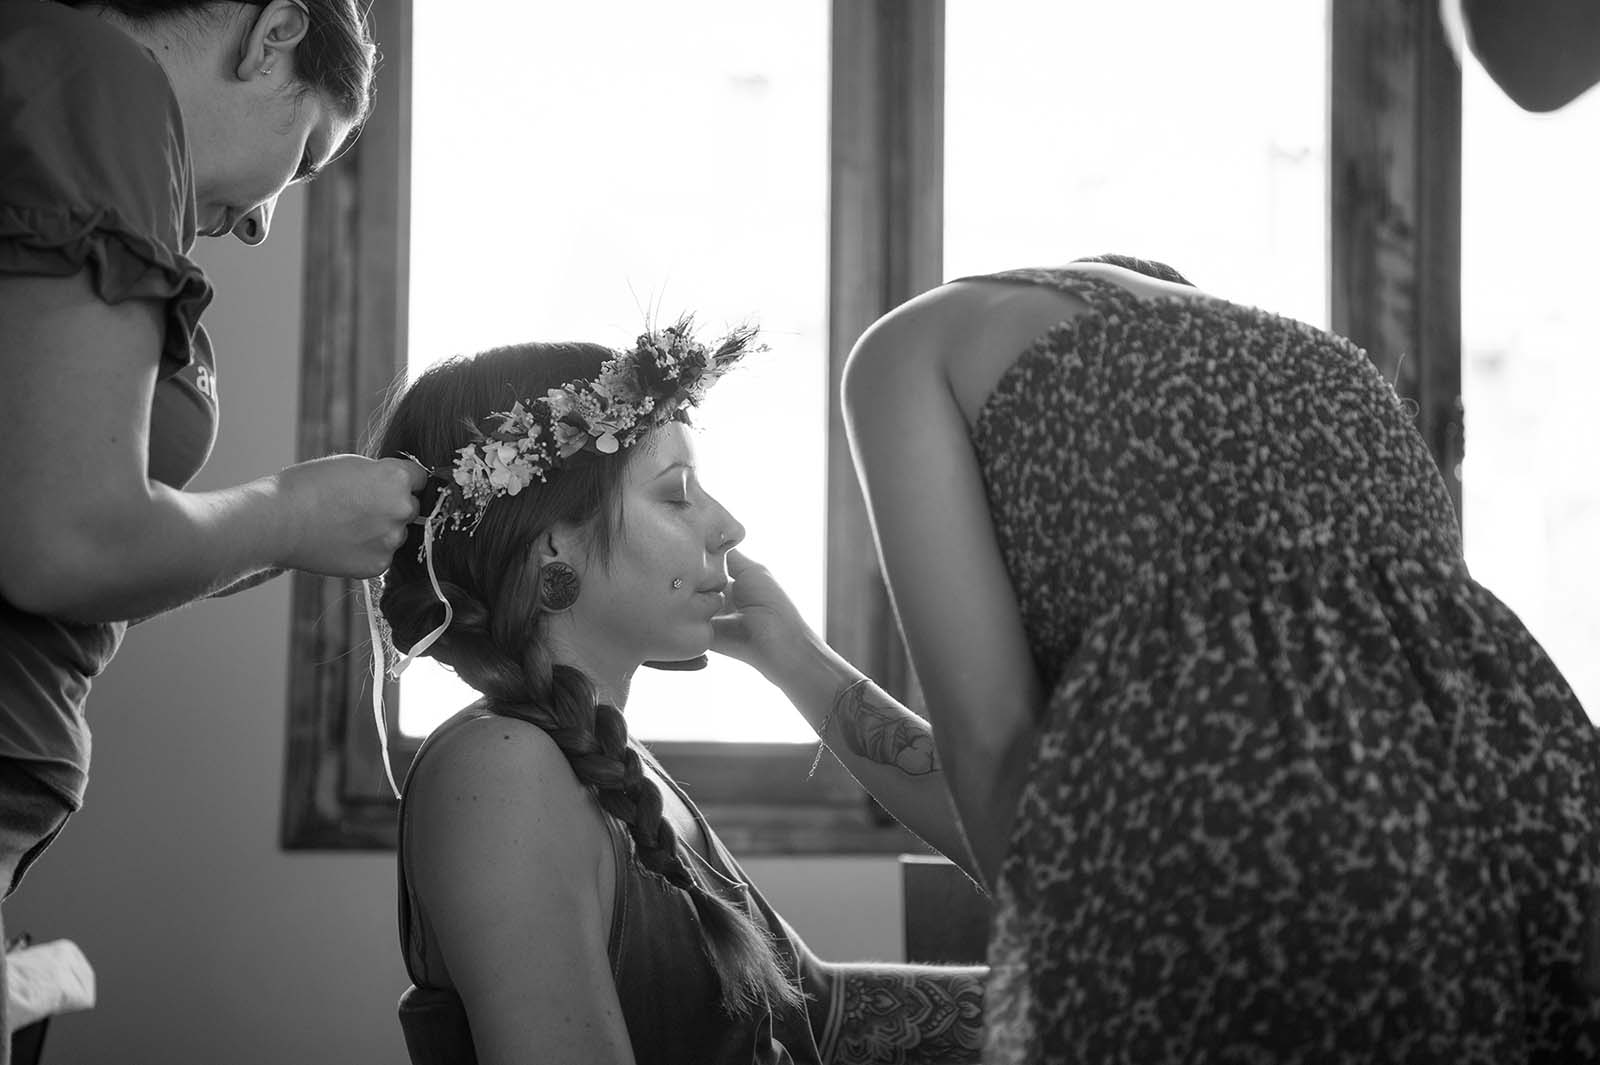 photo noir et blanc d'une dame en train de se faire maquiller et coiffer